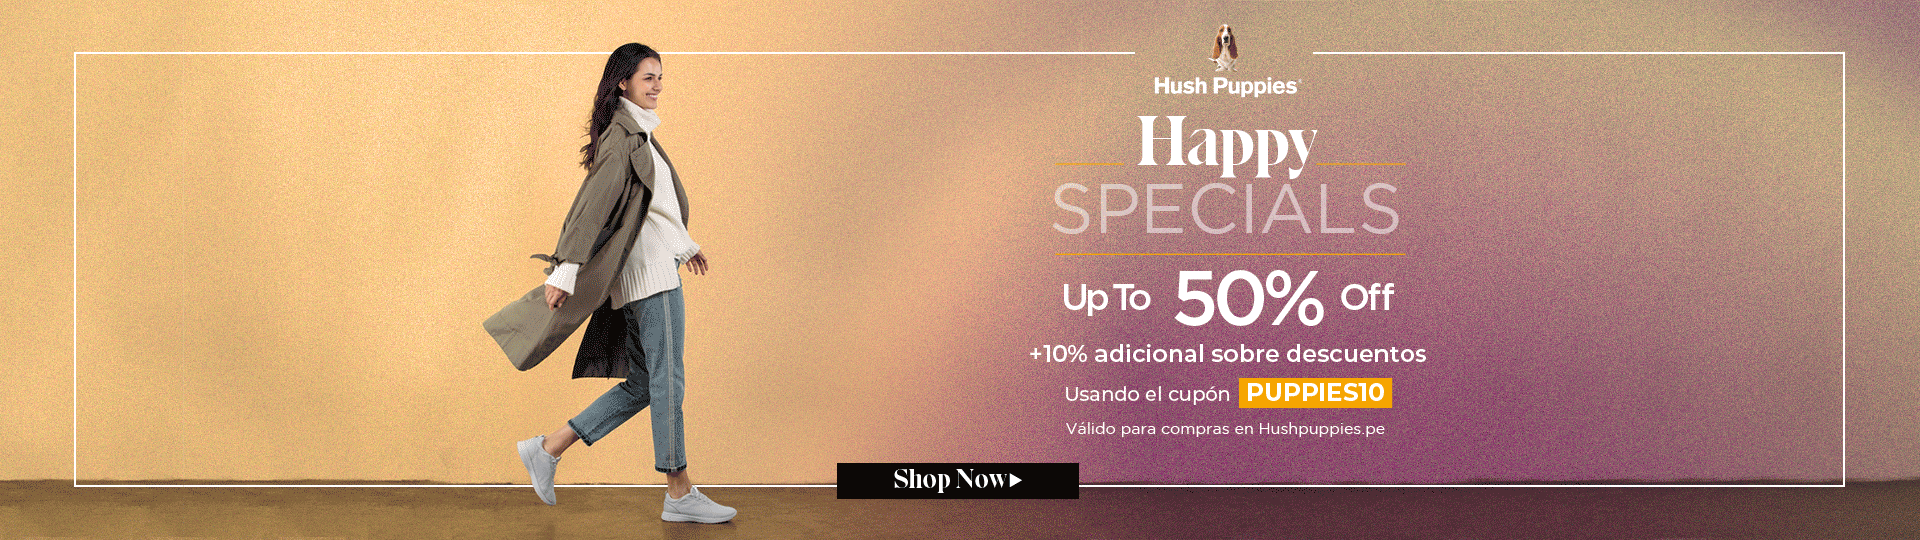 Happy Specials - PUPPIES10 / HP